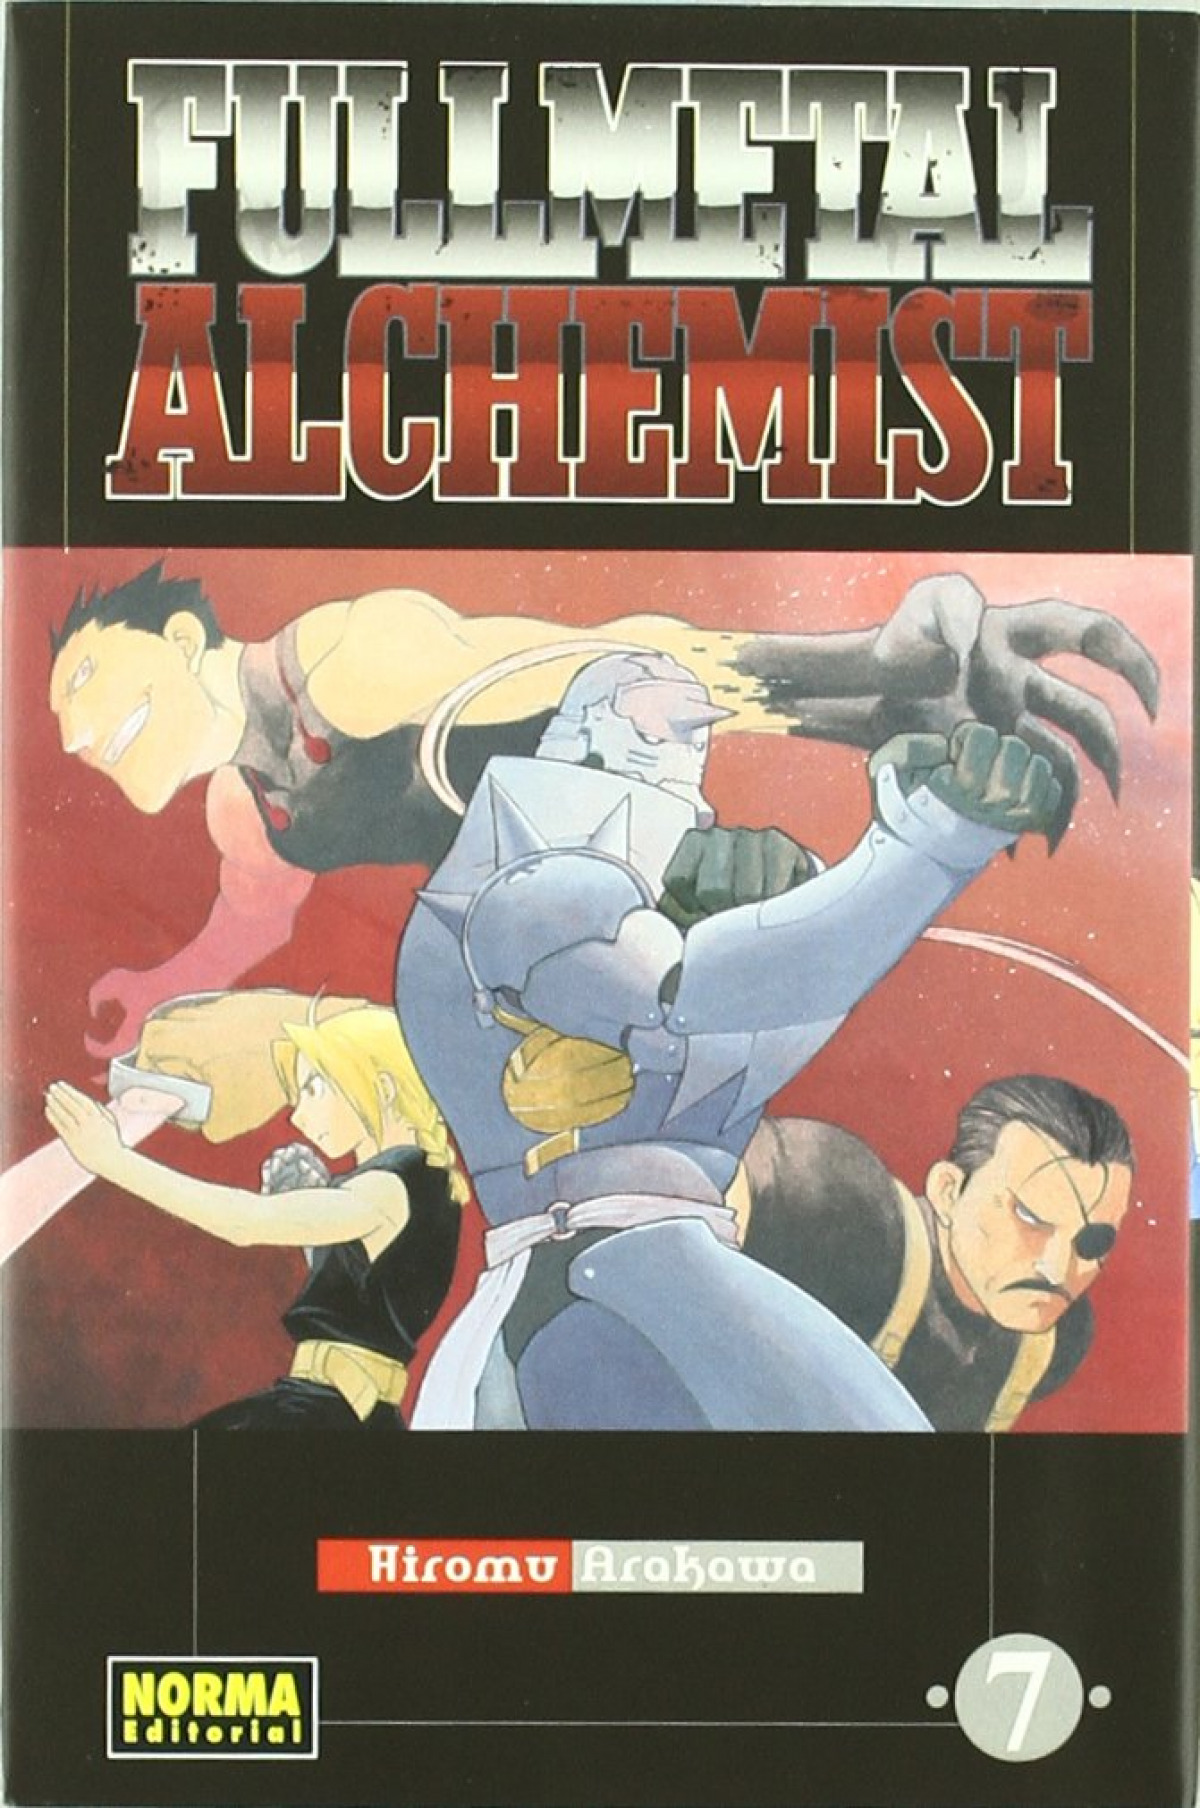 Fullmetal alchemist 7 - Arakawa, Hiromu